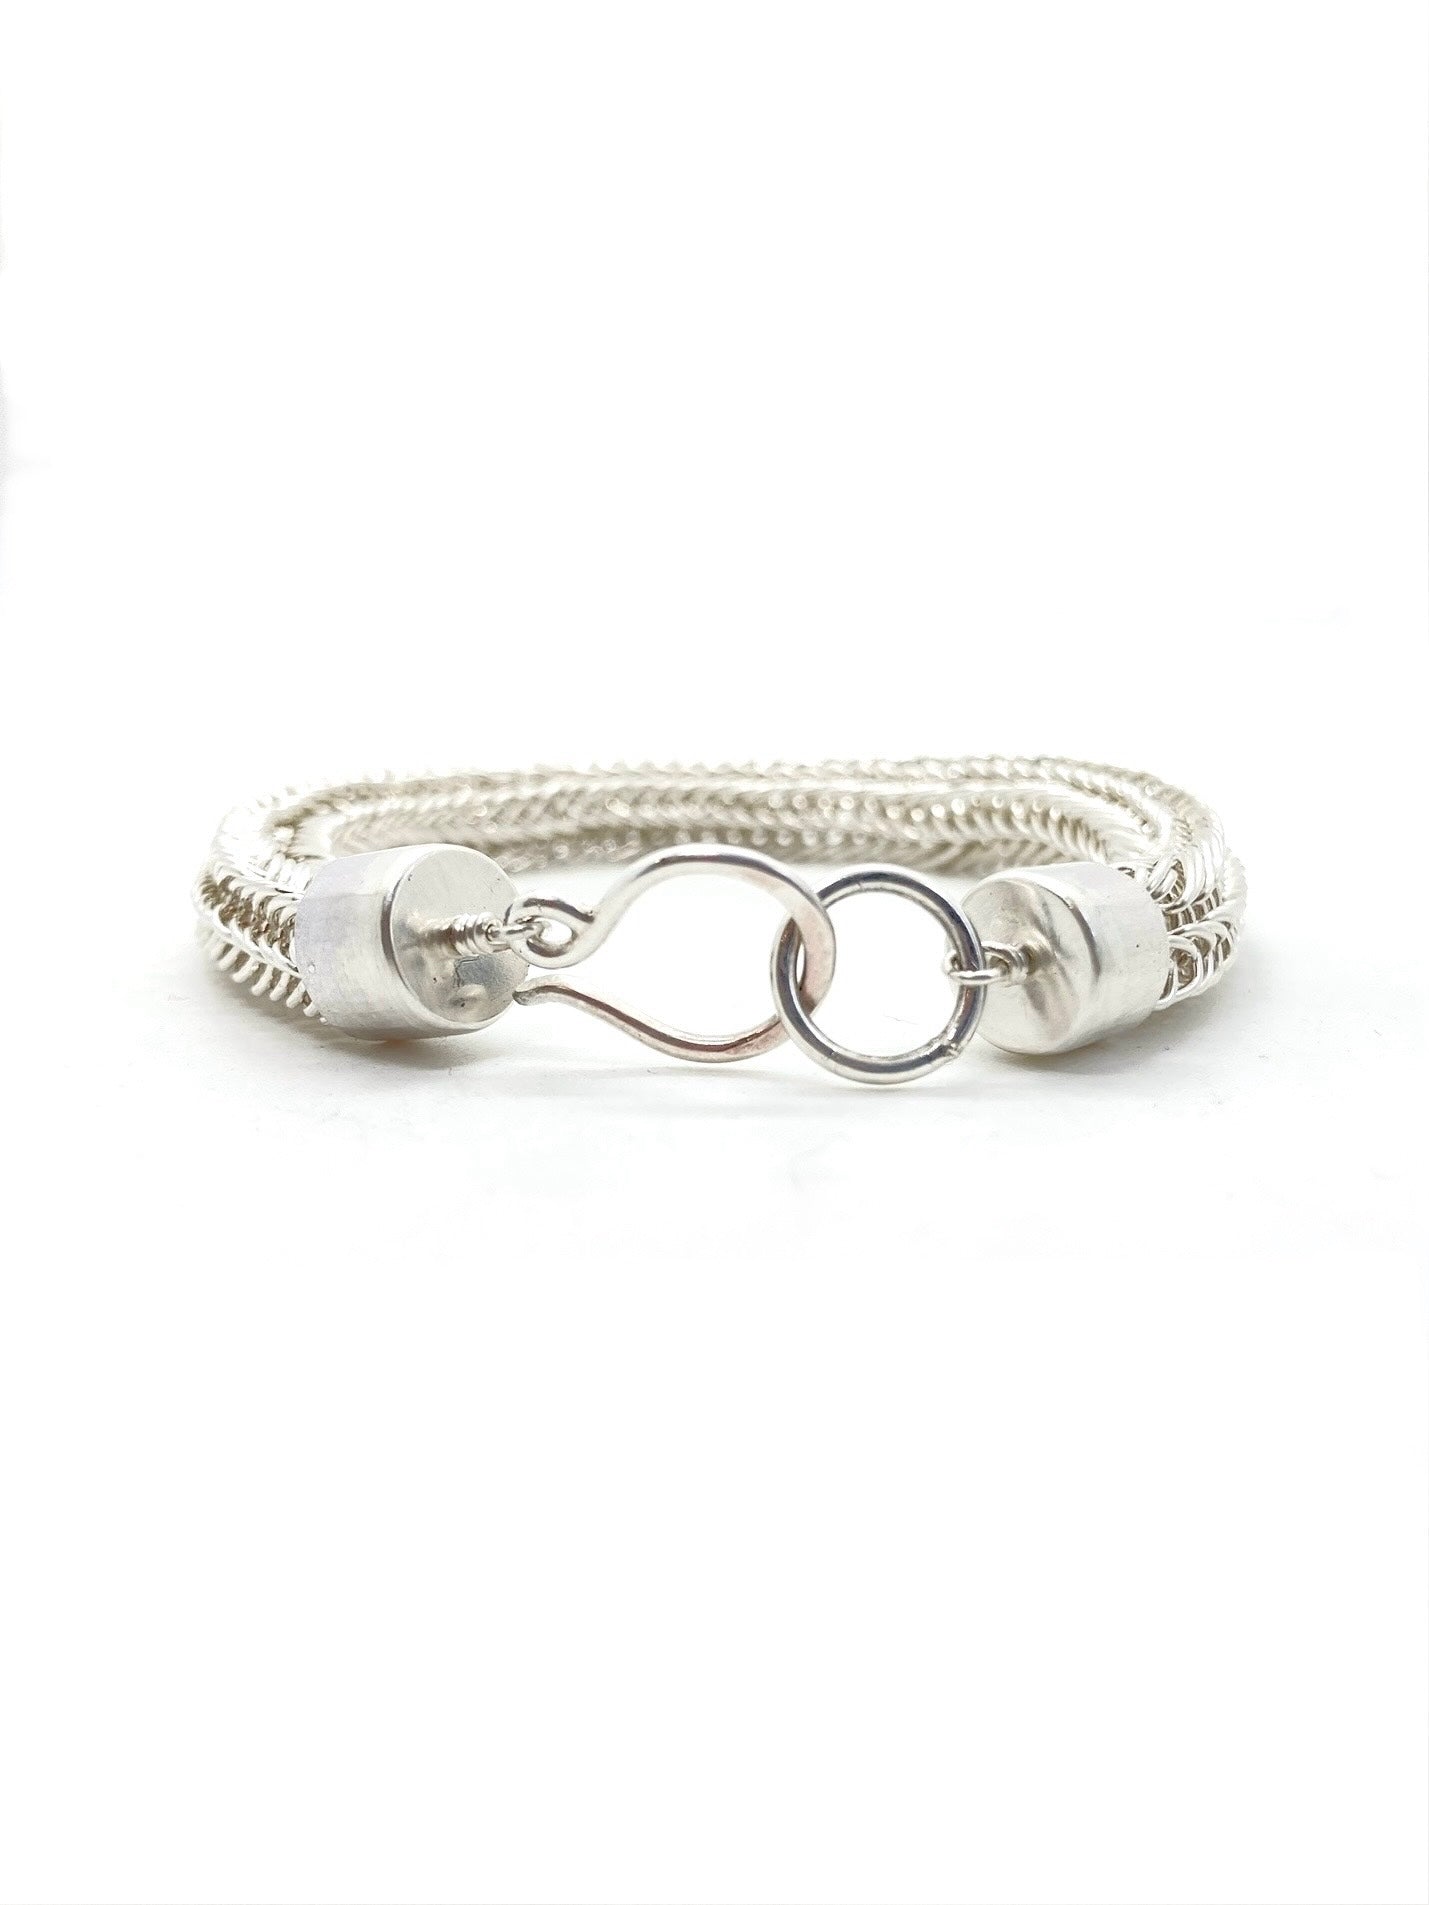 Viking Knit Bracelet in Sterling Silver